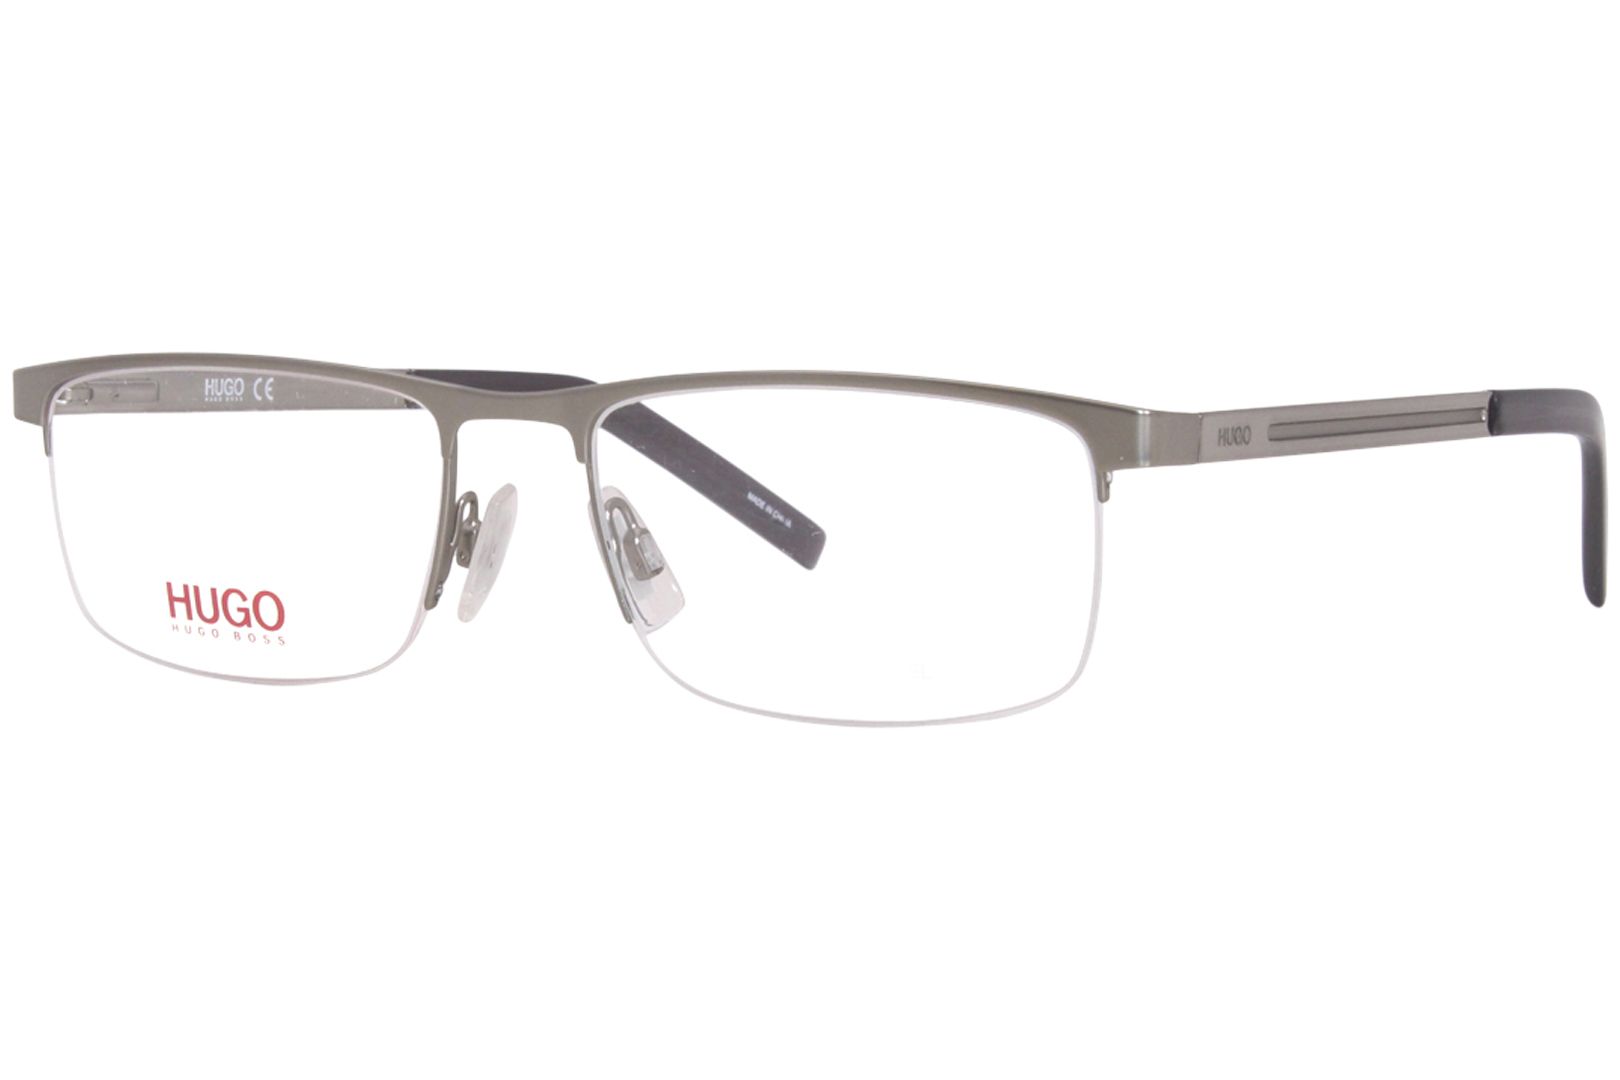 Hugo Boss HG1117 Eyeglasses Men's Semi Rim Rectangle Shape | EyeSpecs.com